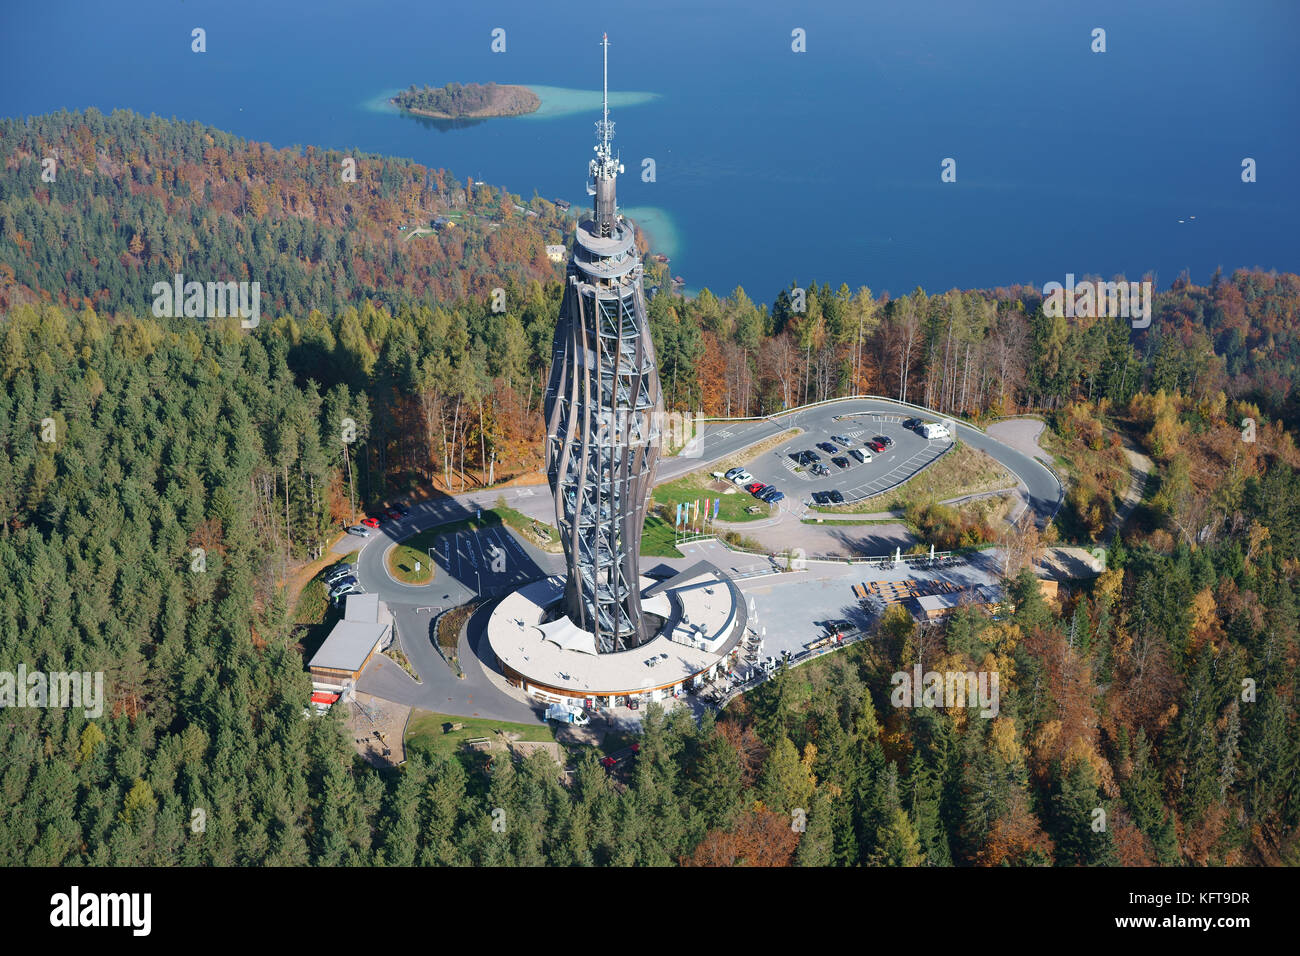 LUFTAUFNAHME. Futuristischer Holzturm für Beobachtung und Fernsehübertragung (Höhe: 100m). Pyramidenkogel, Wörthersee, Kärnten, Österreich. Stockfoto